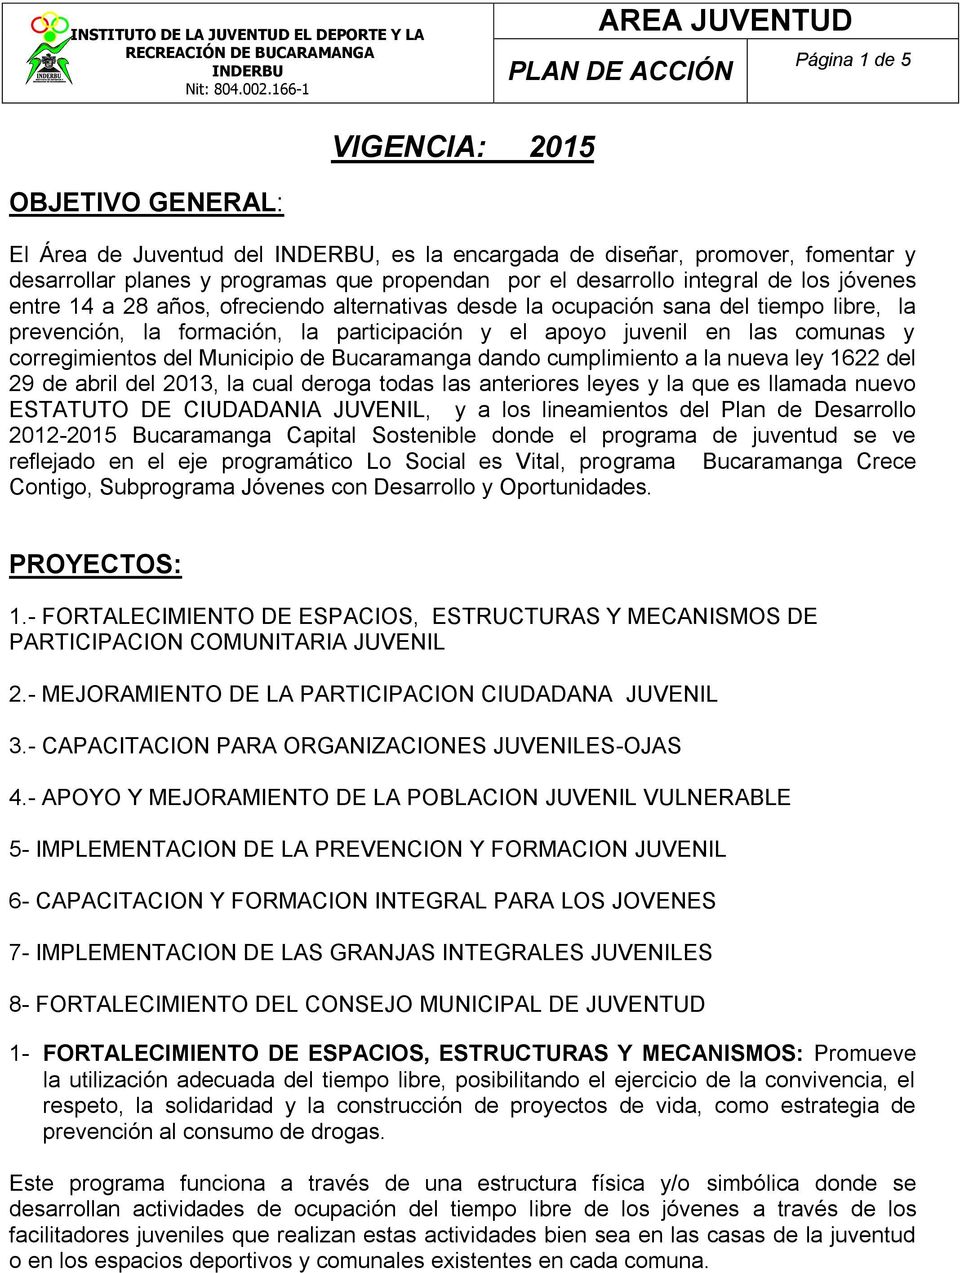 Municipio de Bucaramanga dando cumplimiento a la nueva ley 1622 del 29 de abril del 2013, la cual deroga todas las anteriores leyes y la que es llamada nuevo ESTATUTO DE CIUDADANIA, y a los